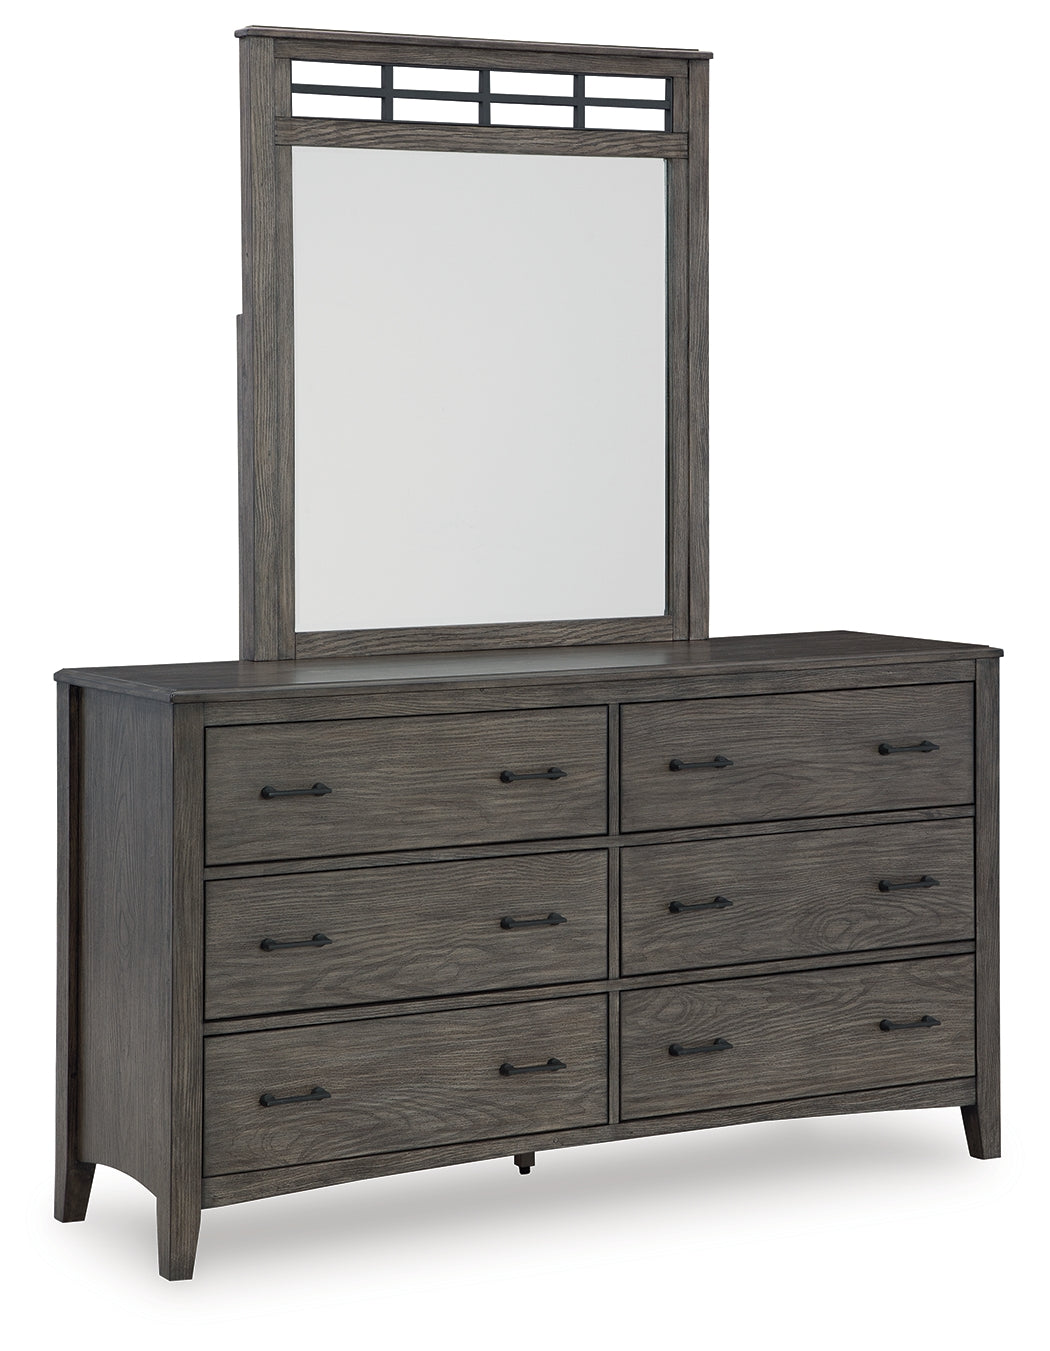 Montillan Queen Panel Bedroom Set with Dresser and Mirror